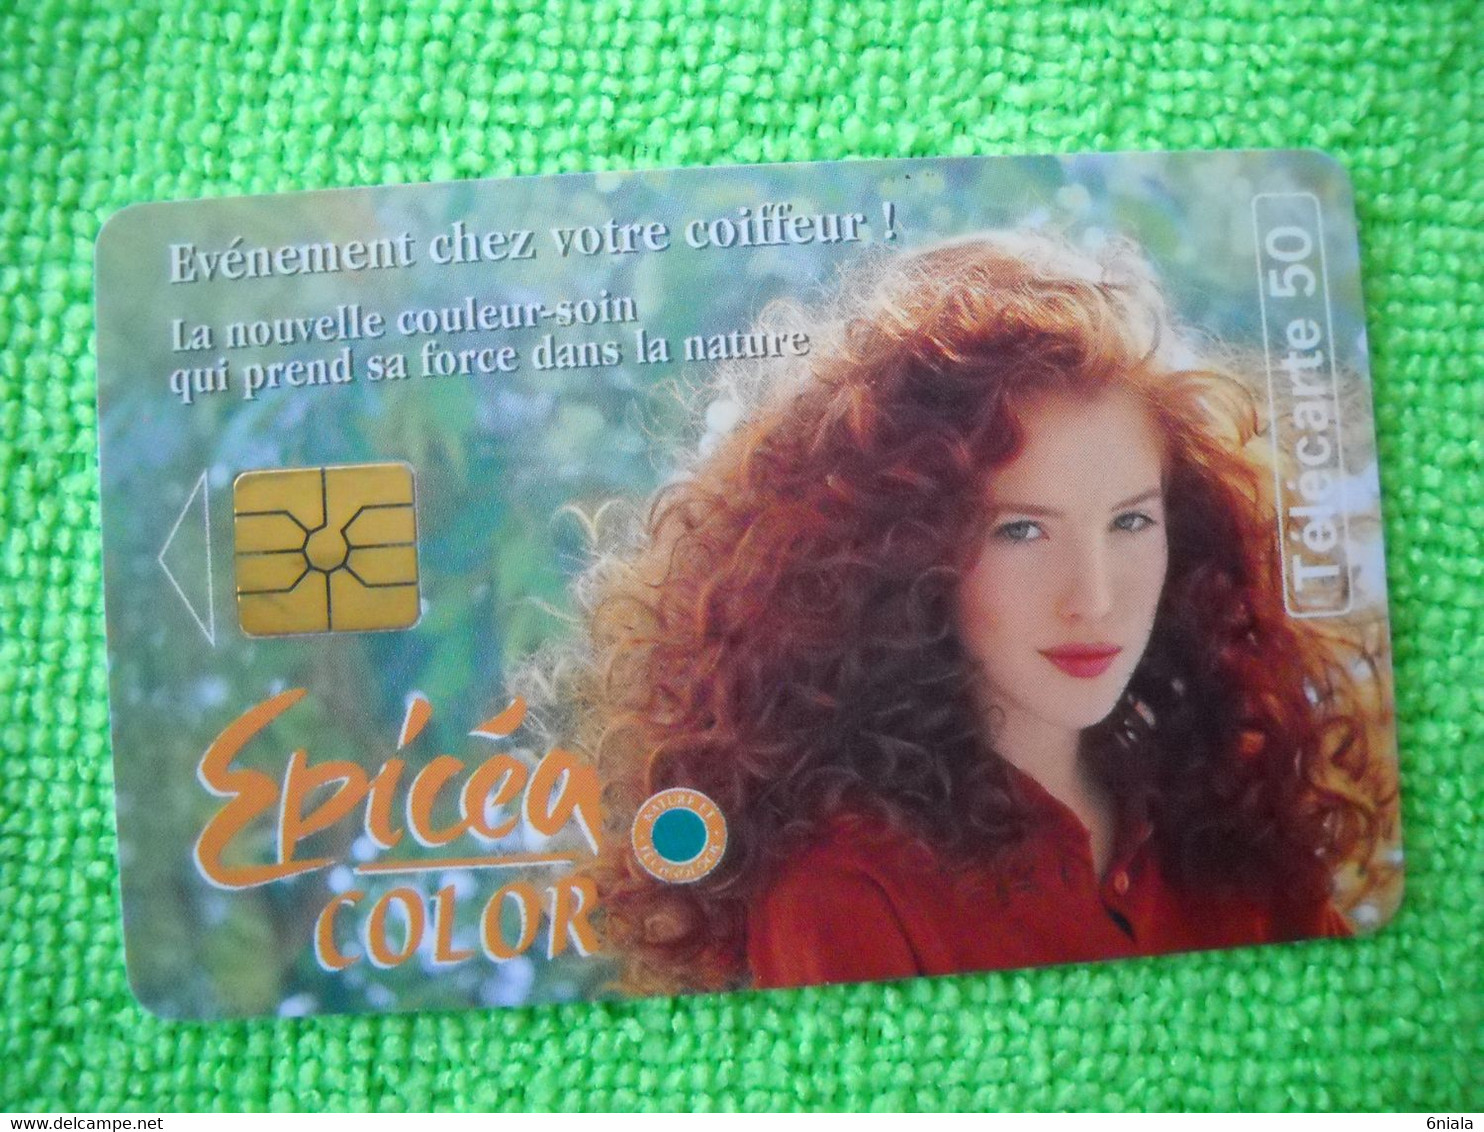 7110 Télécarte Collection EPICEA COLOR  Coloration Cheveux Shampoing     50u  ( Recto Verso)  Carte Téléphonique - Werbung